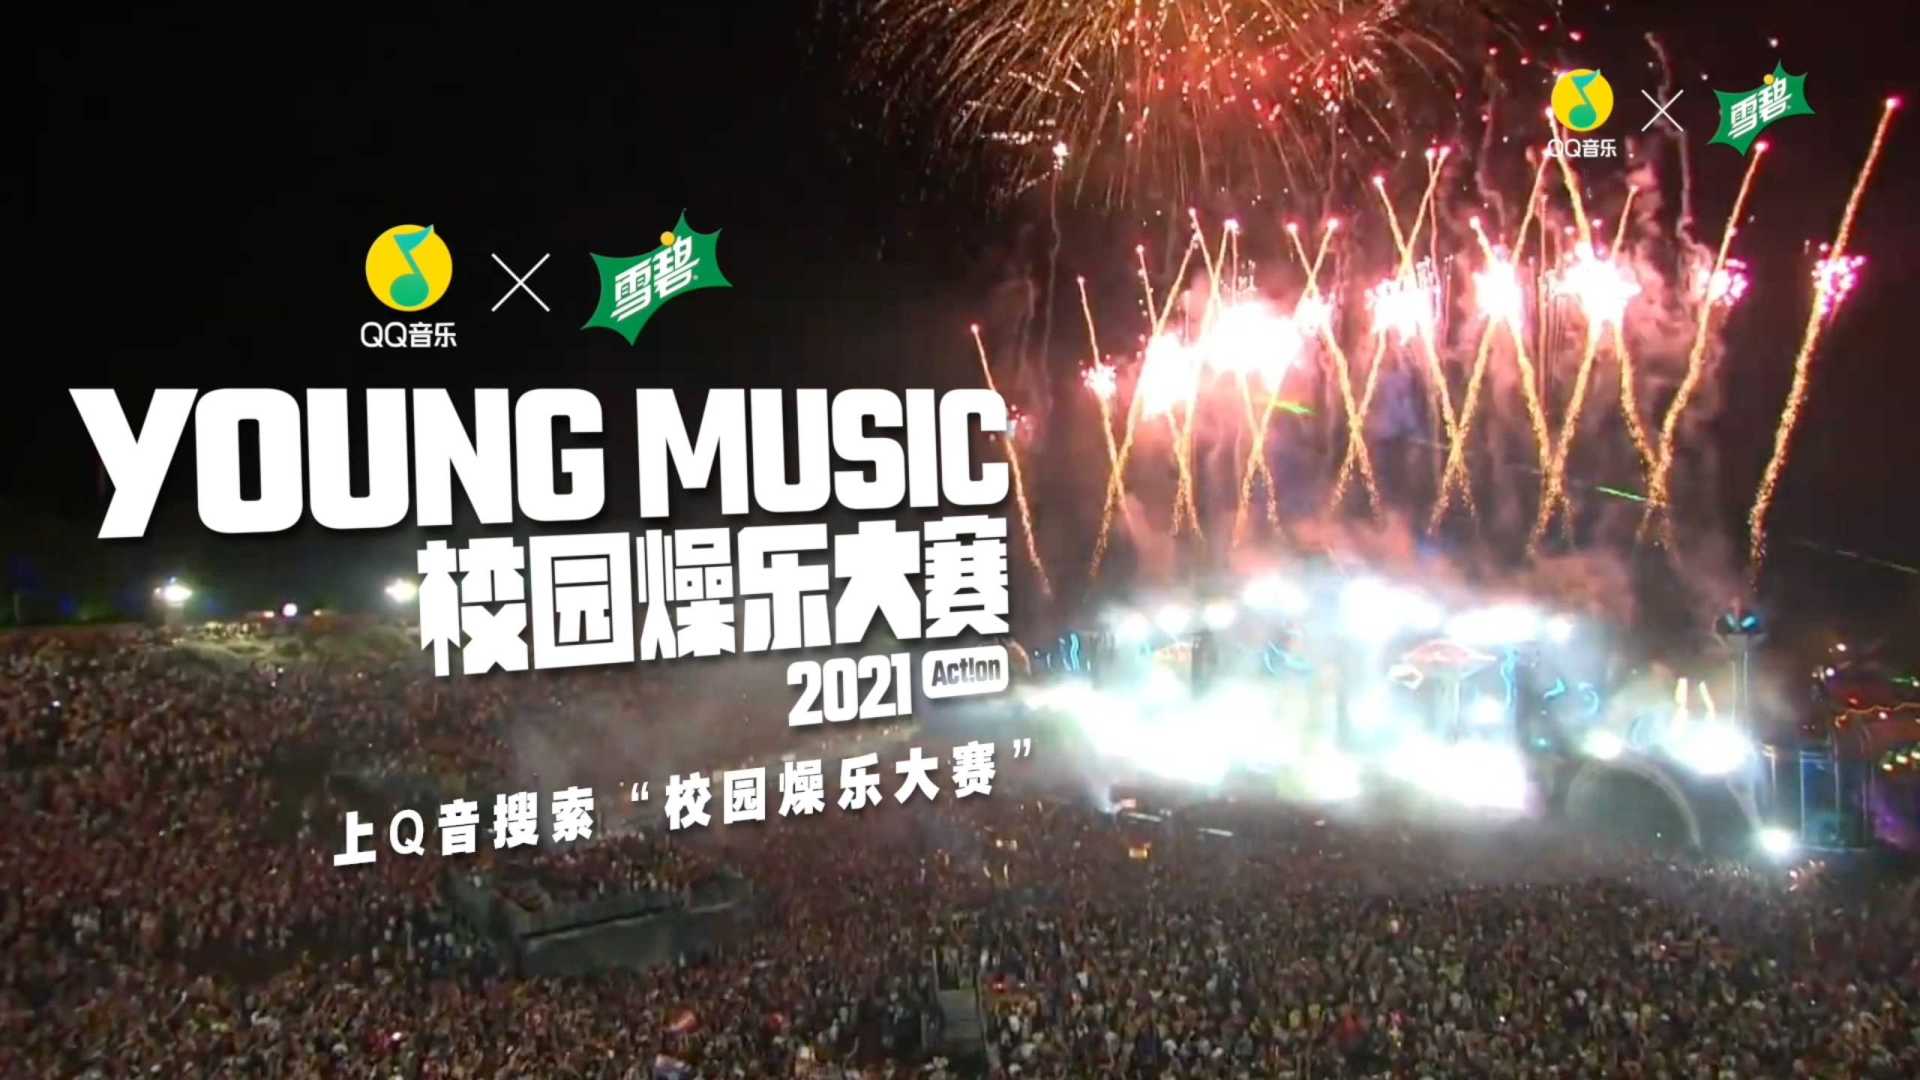 QQ音乐&雪碧 2021 YOUNG MUSIC 校园燥乐大赛